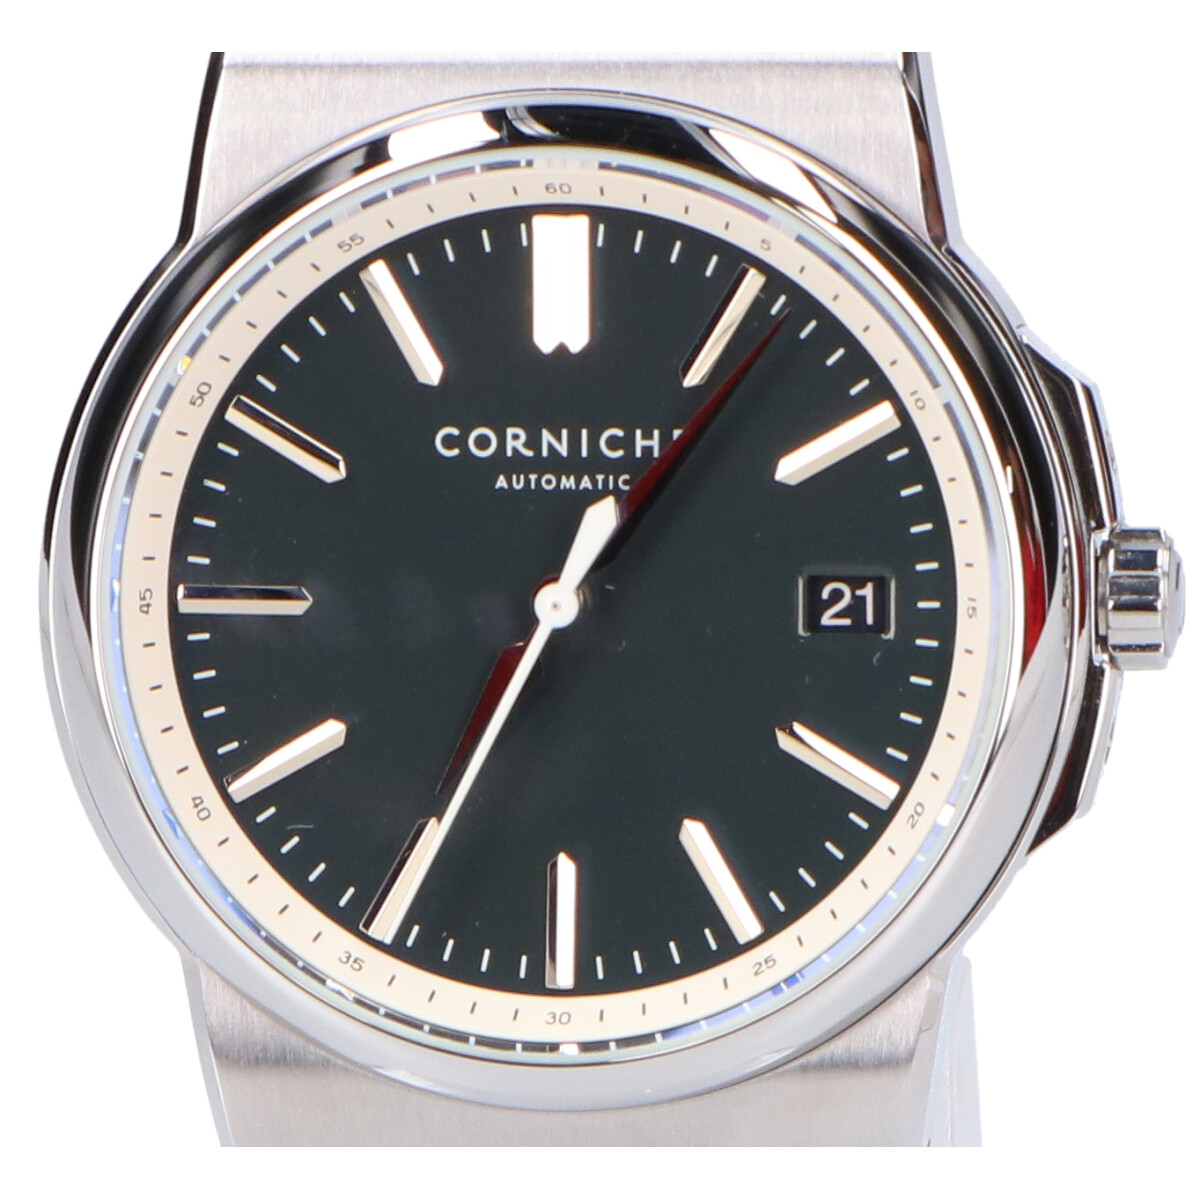 コーニッシュのRef.89306 ラグランデコーニッシュ ブルーダイヤルデイト自動巻き腕時計の買取実績です。